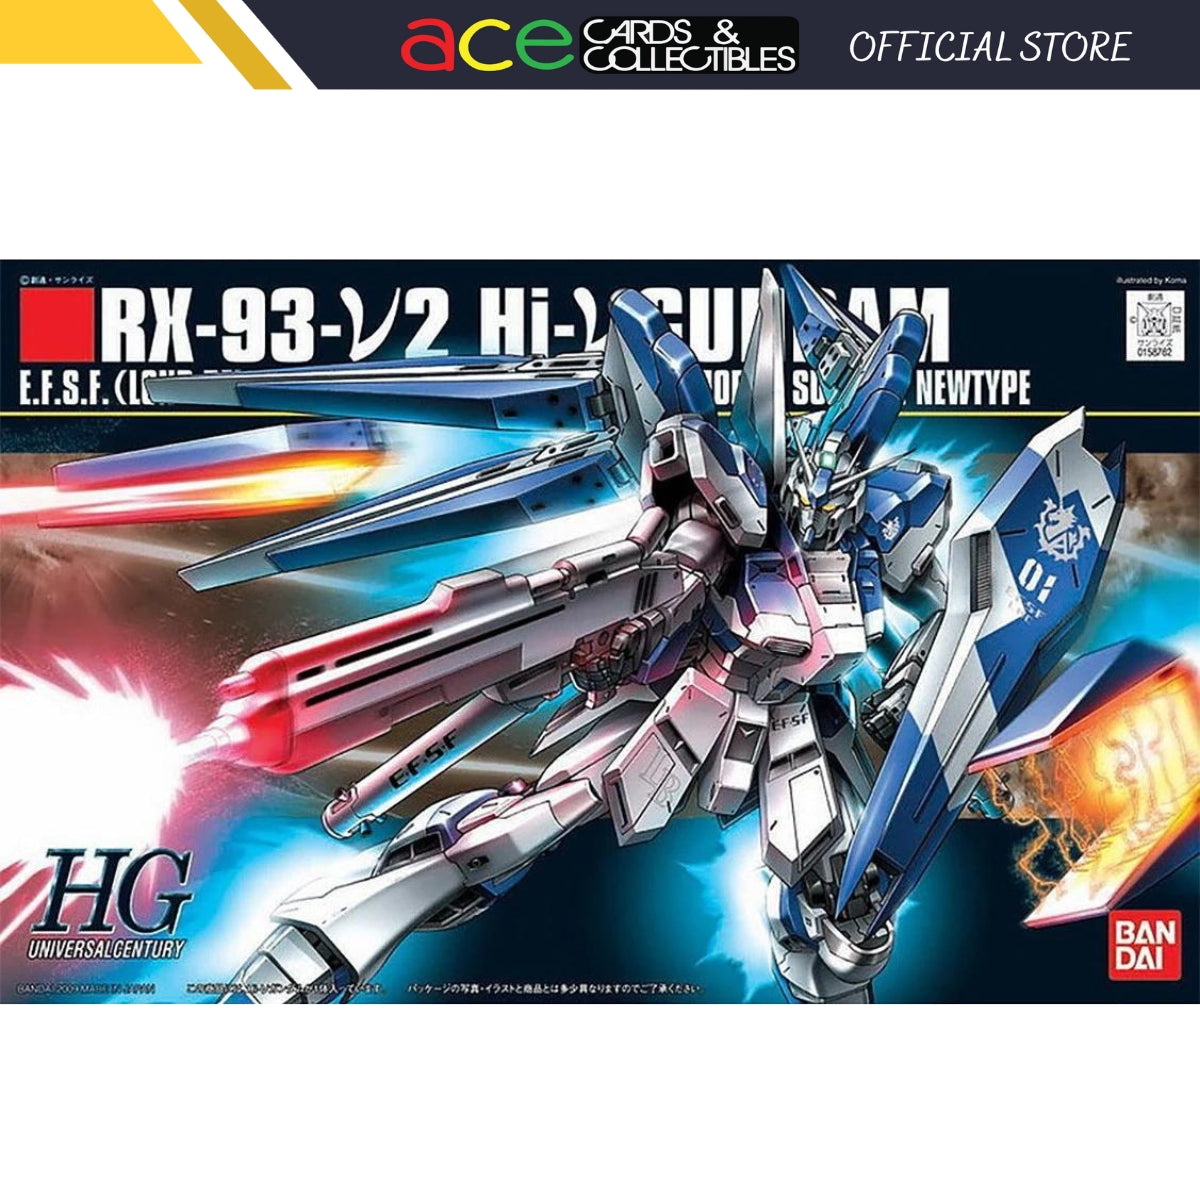 Gunpla HGUC 1/144 Hi-V Gundam-Bandai-Ace Cards & Collectibles